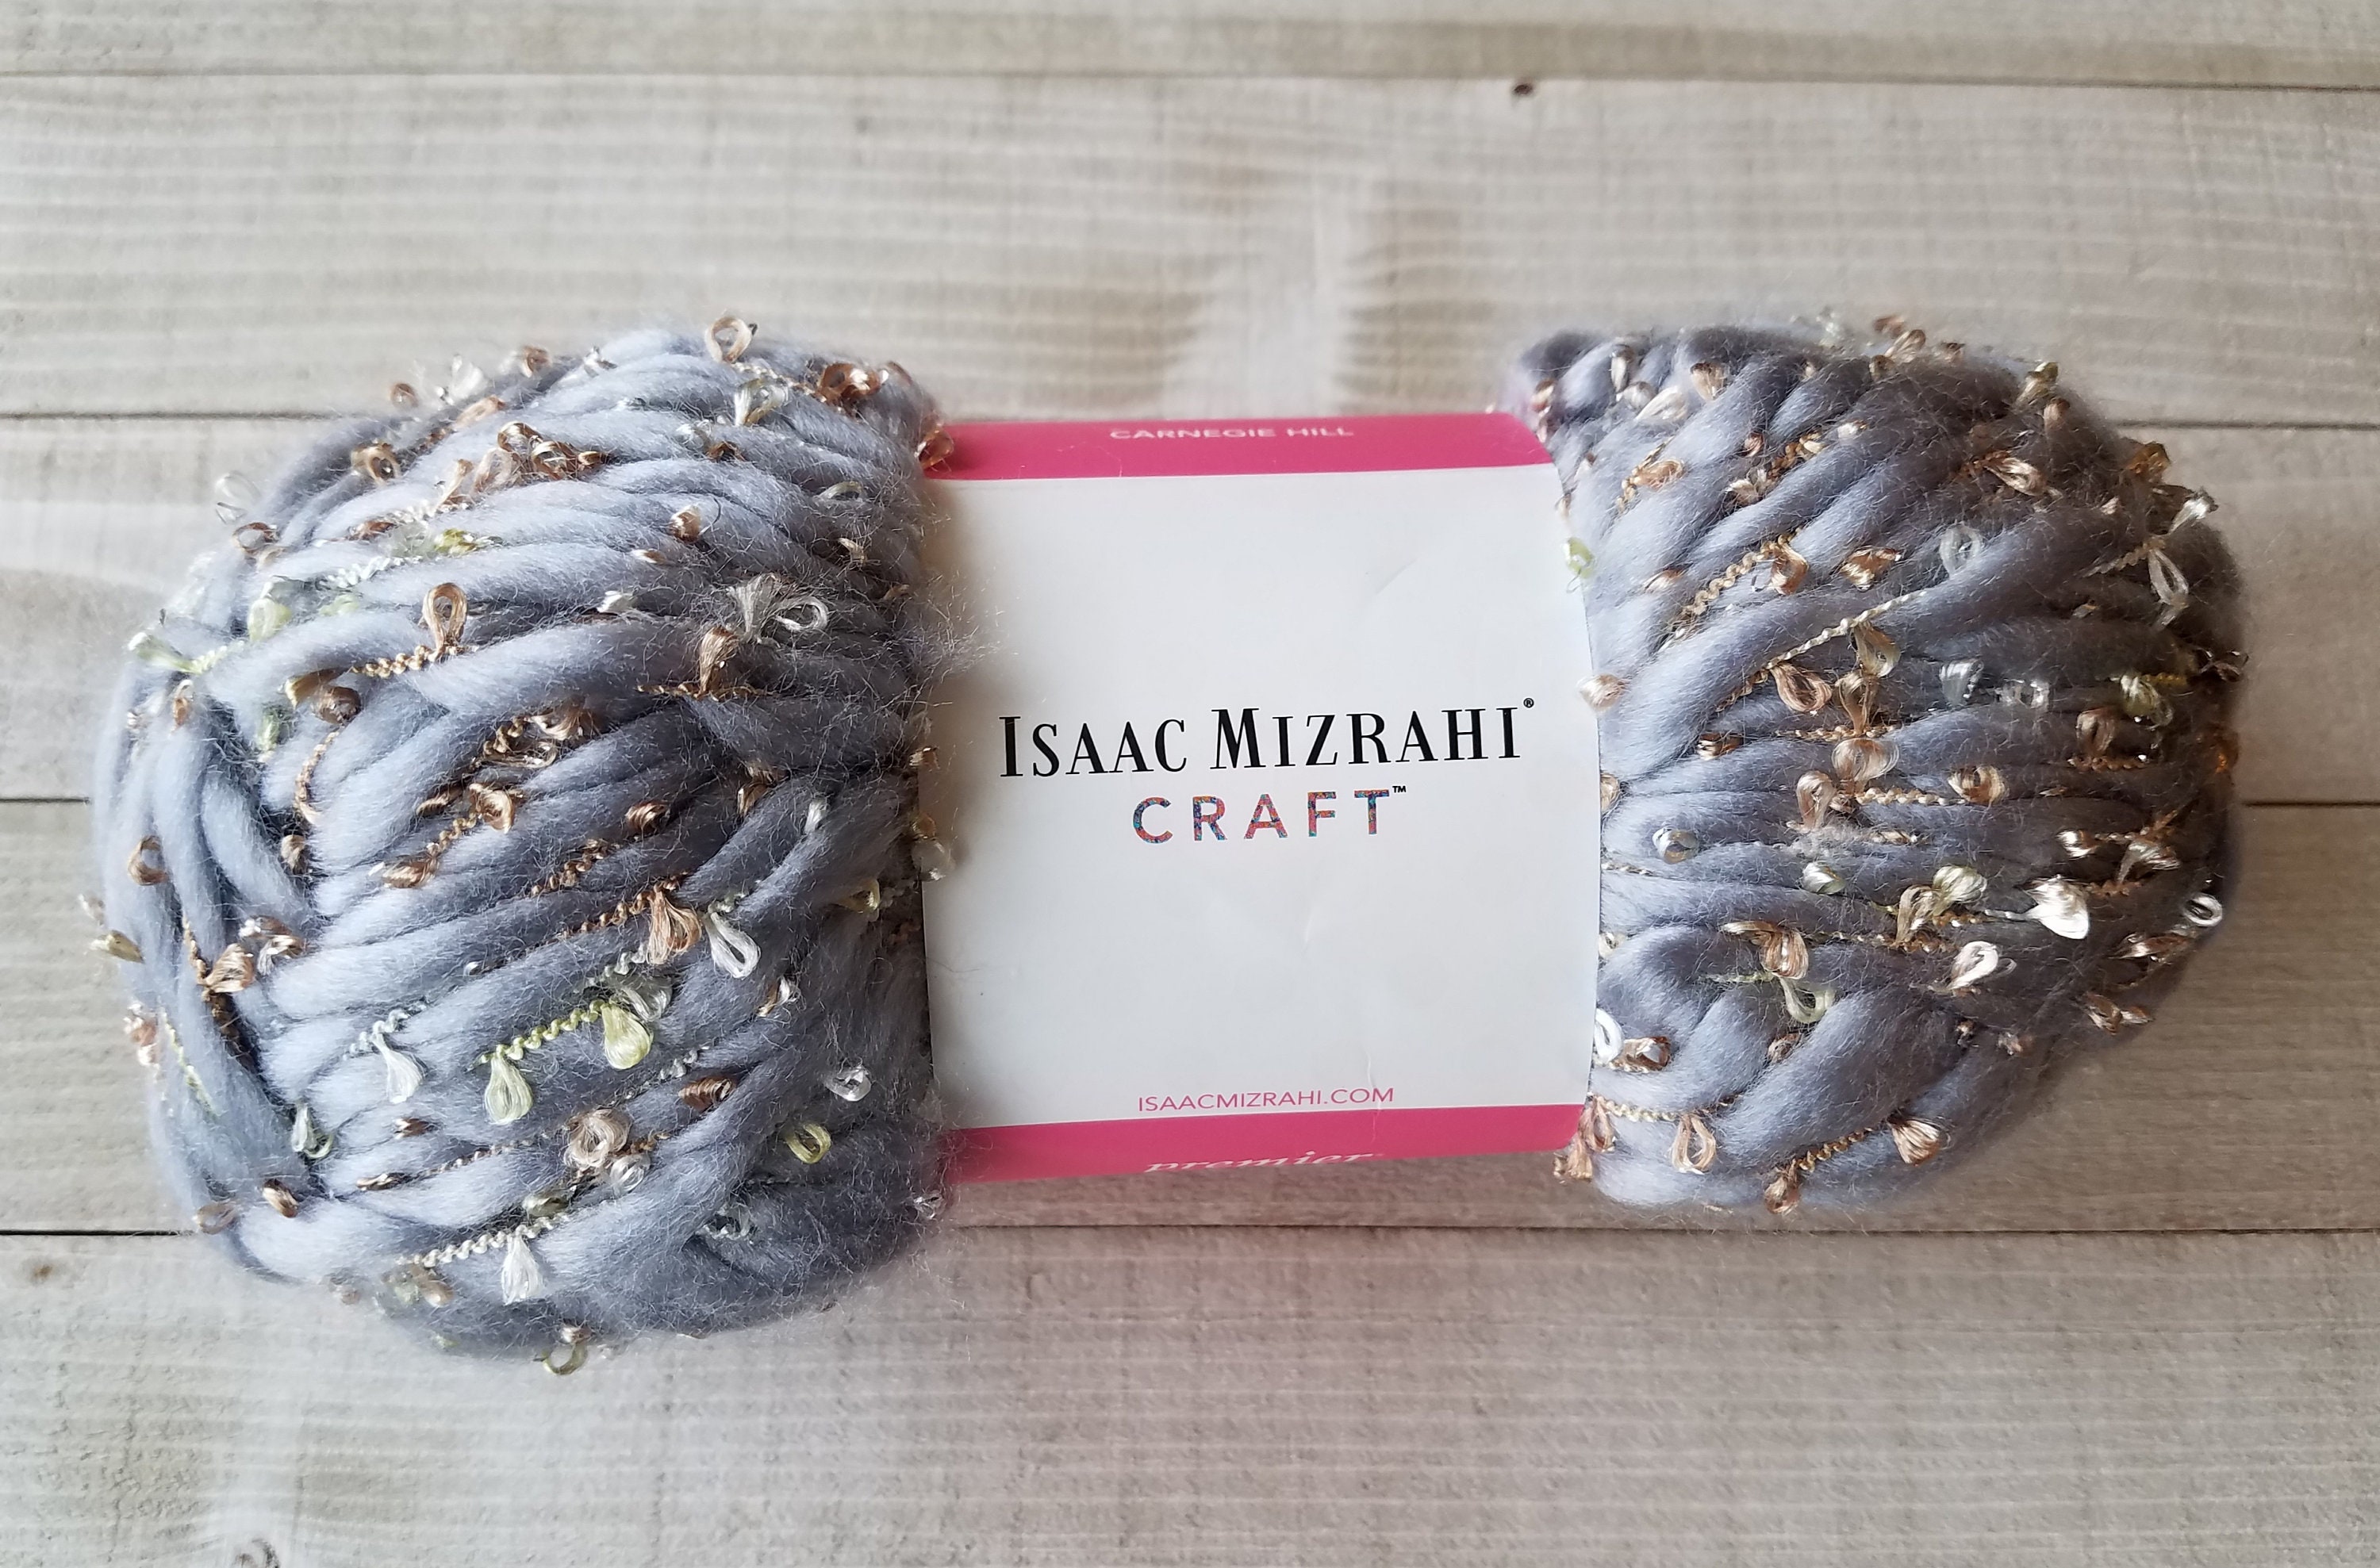 Isaac mizrahi craft yarn carnegie hill